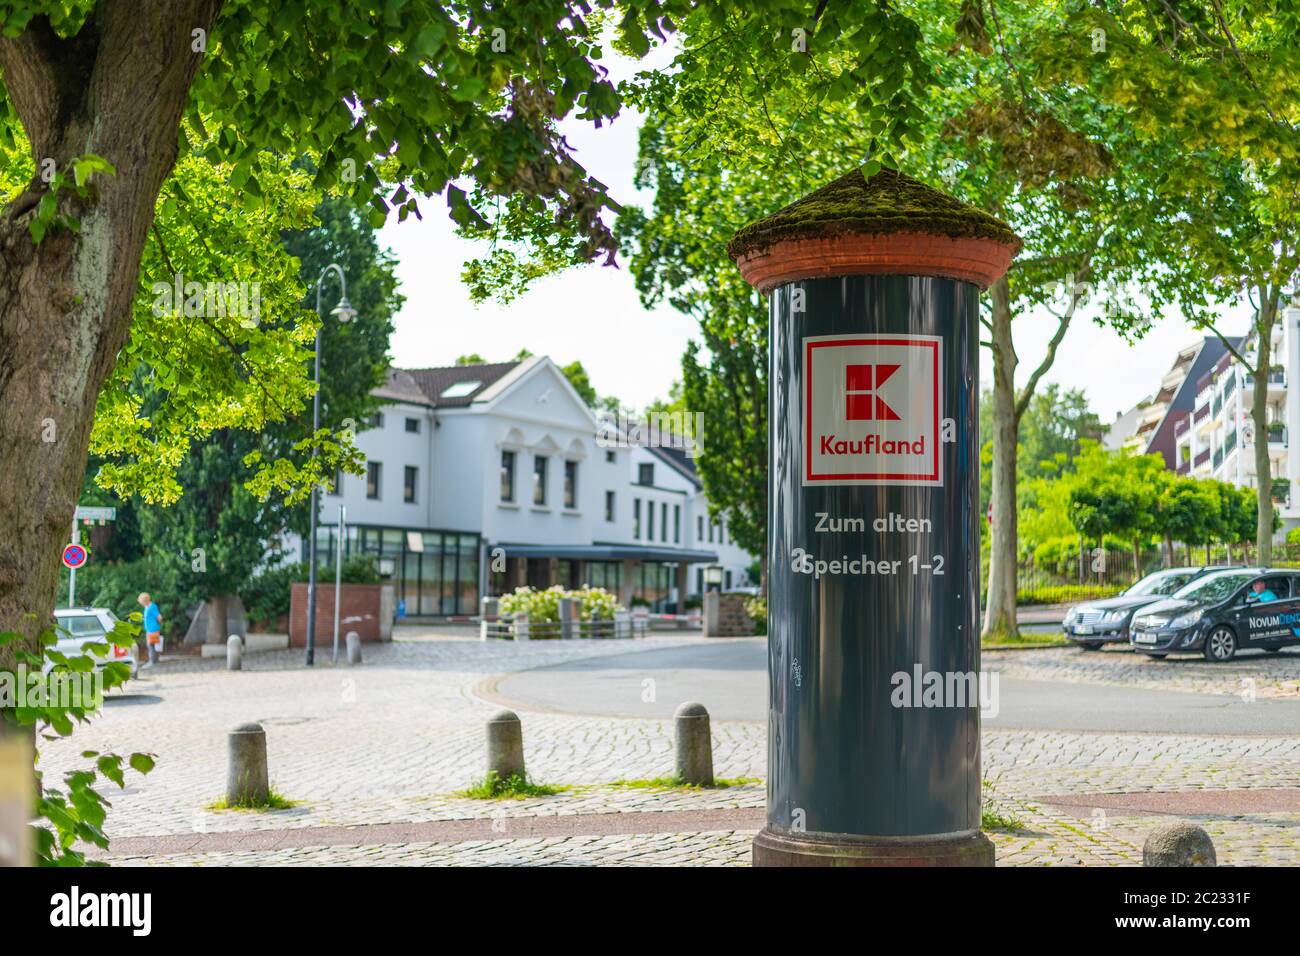 Bremen, Alemania 16.06.2020: publicidad de Kaufland de nueva construcción en un pilar Foto de stock